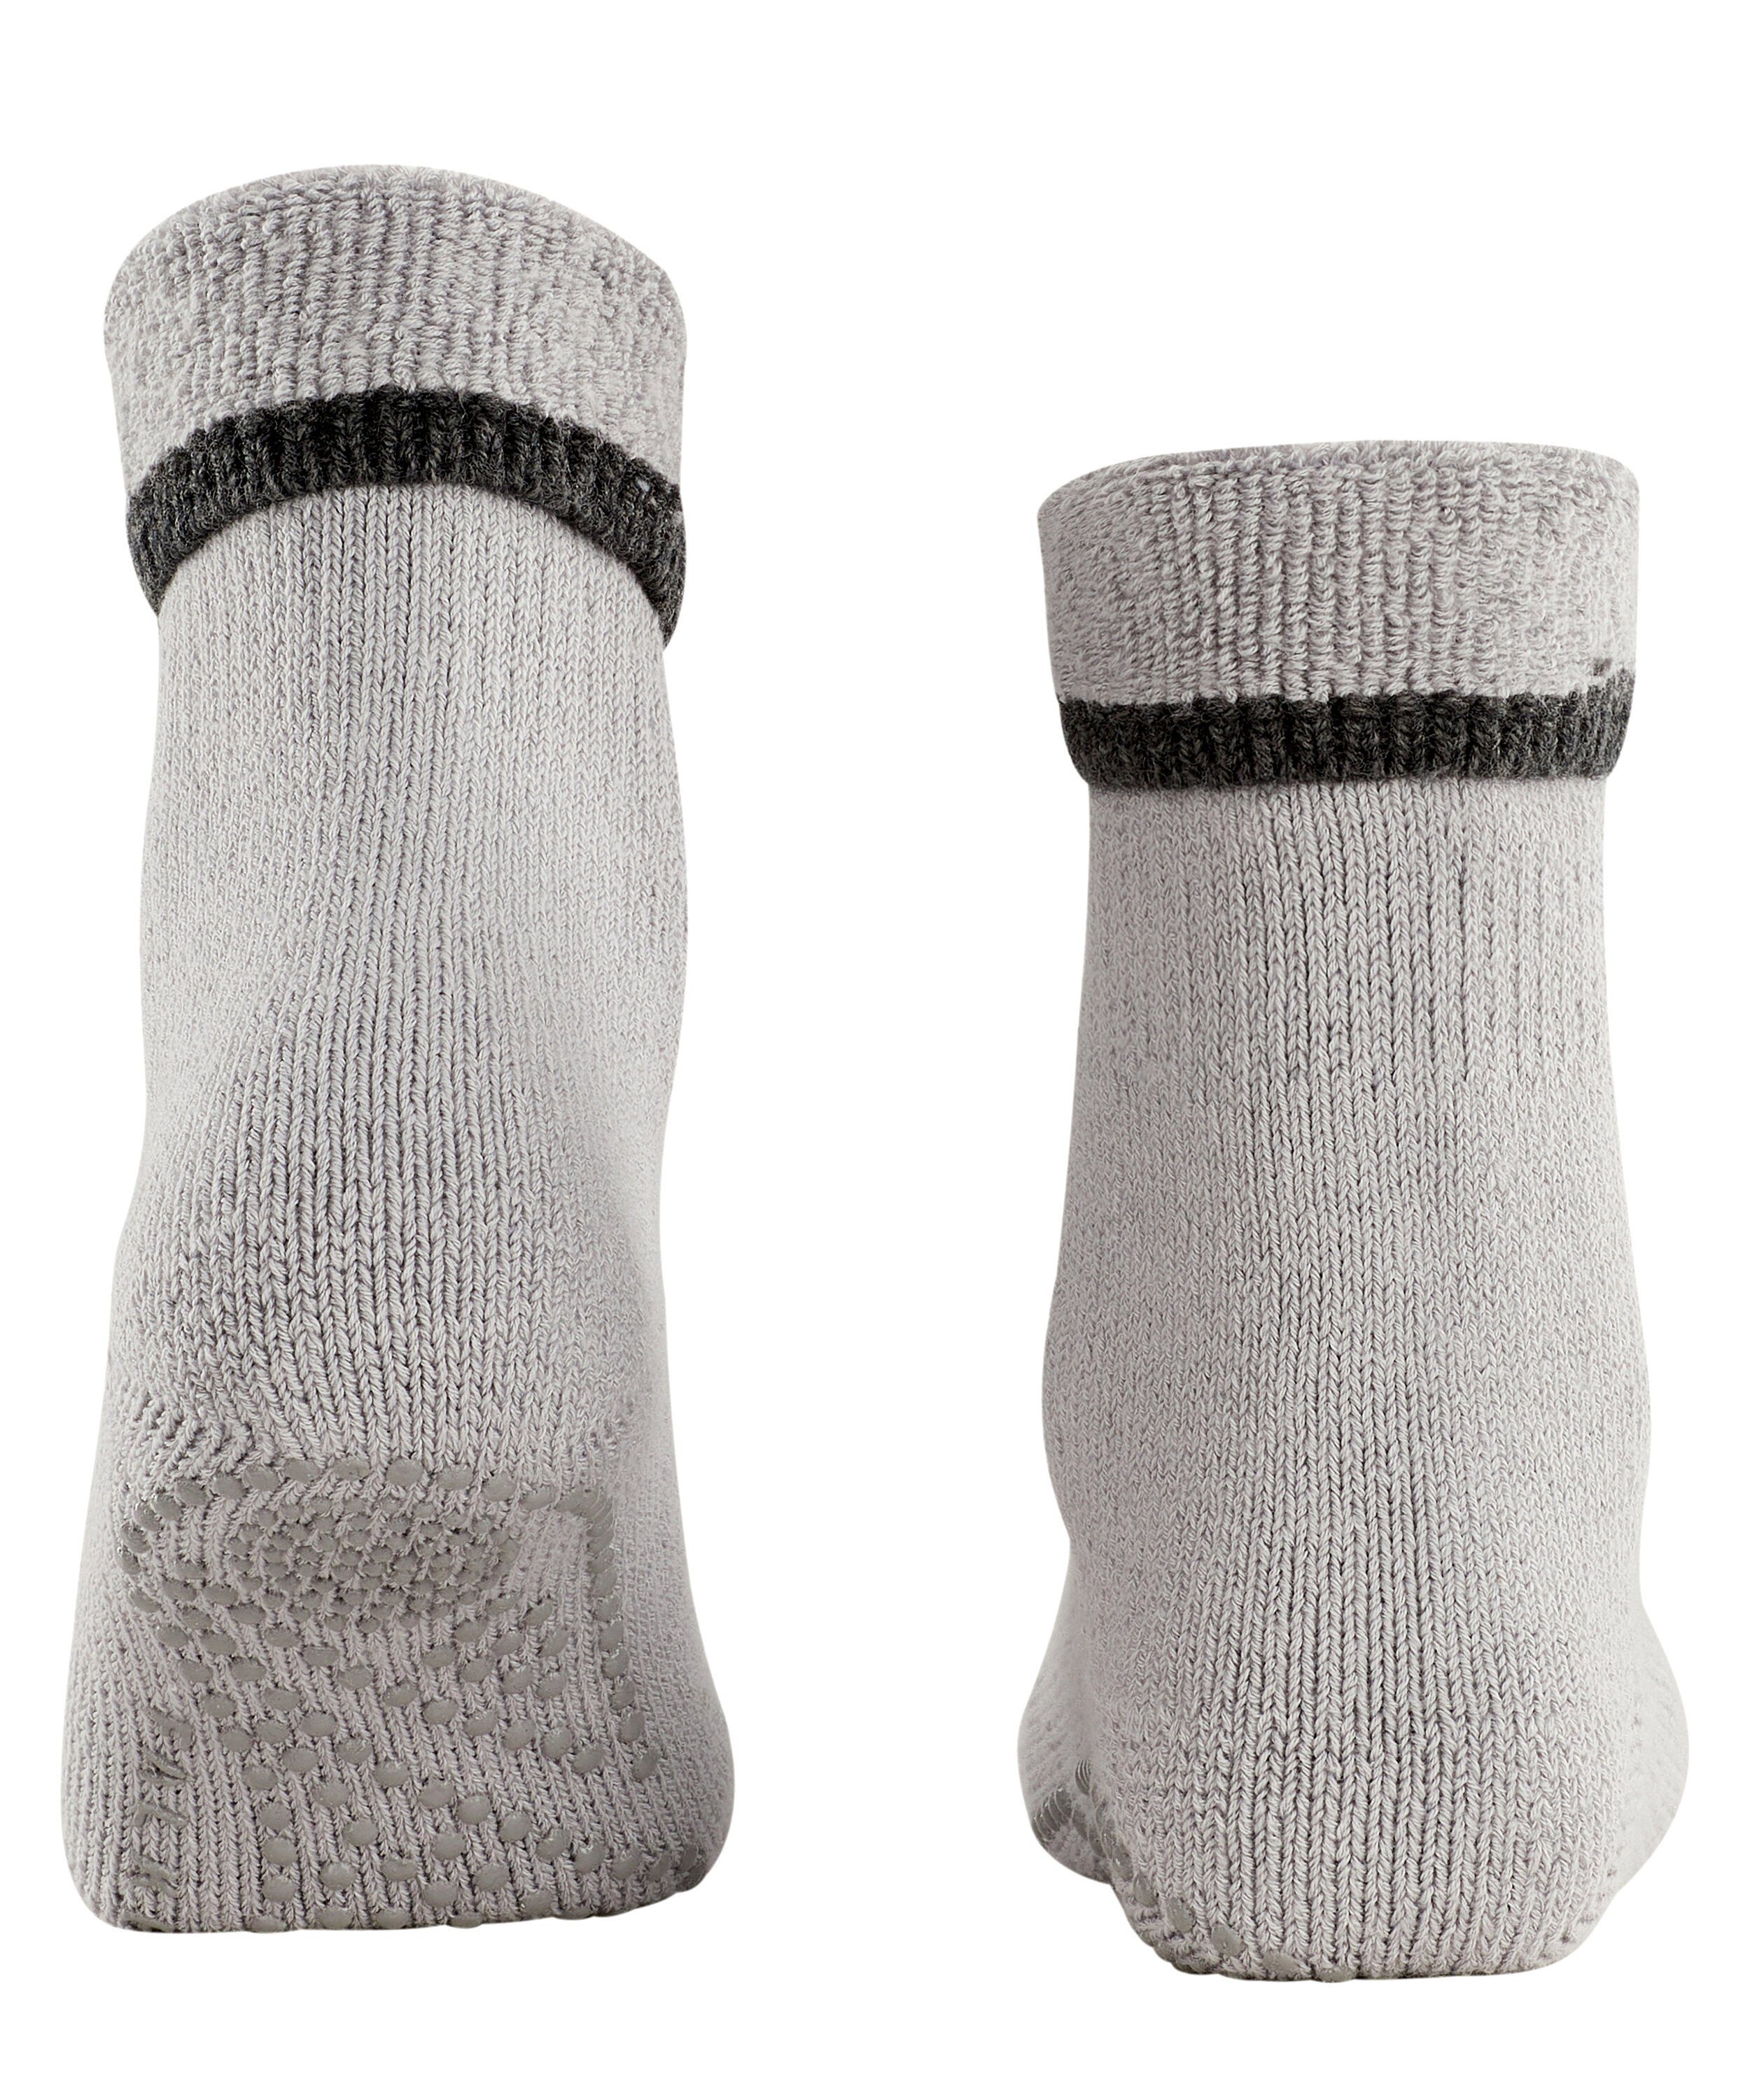 (1-Paar) Cuddle (3290) silver Socken Pads FALKE